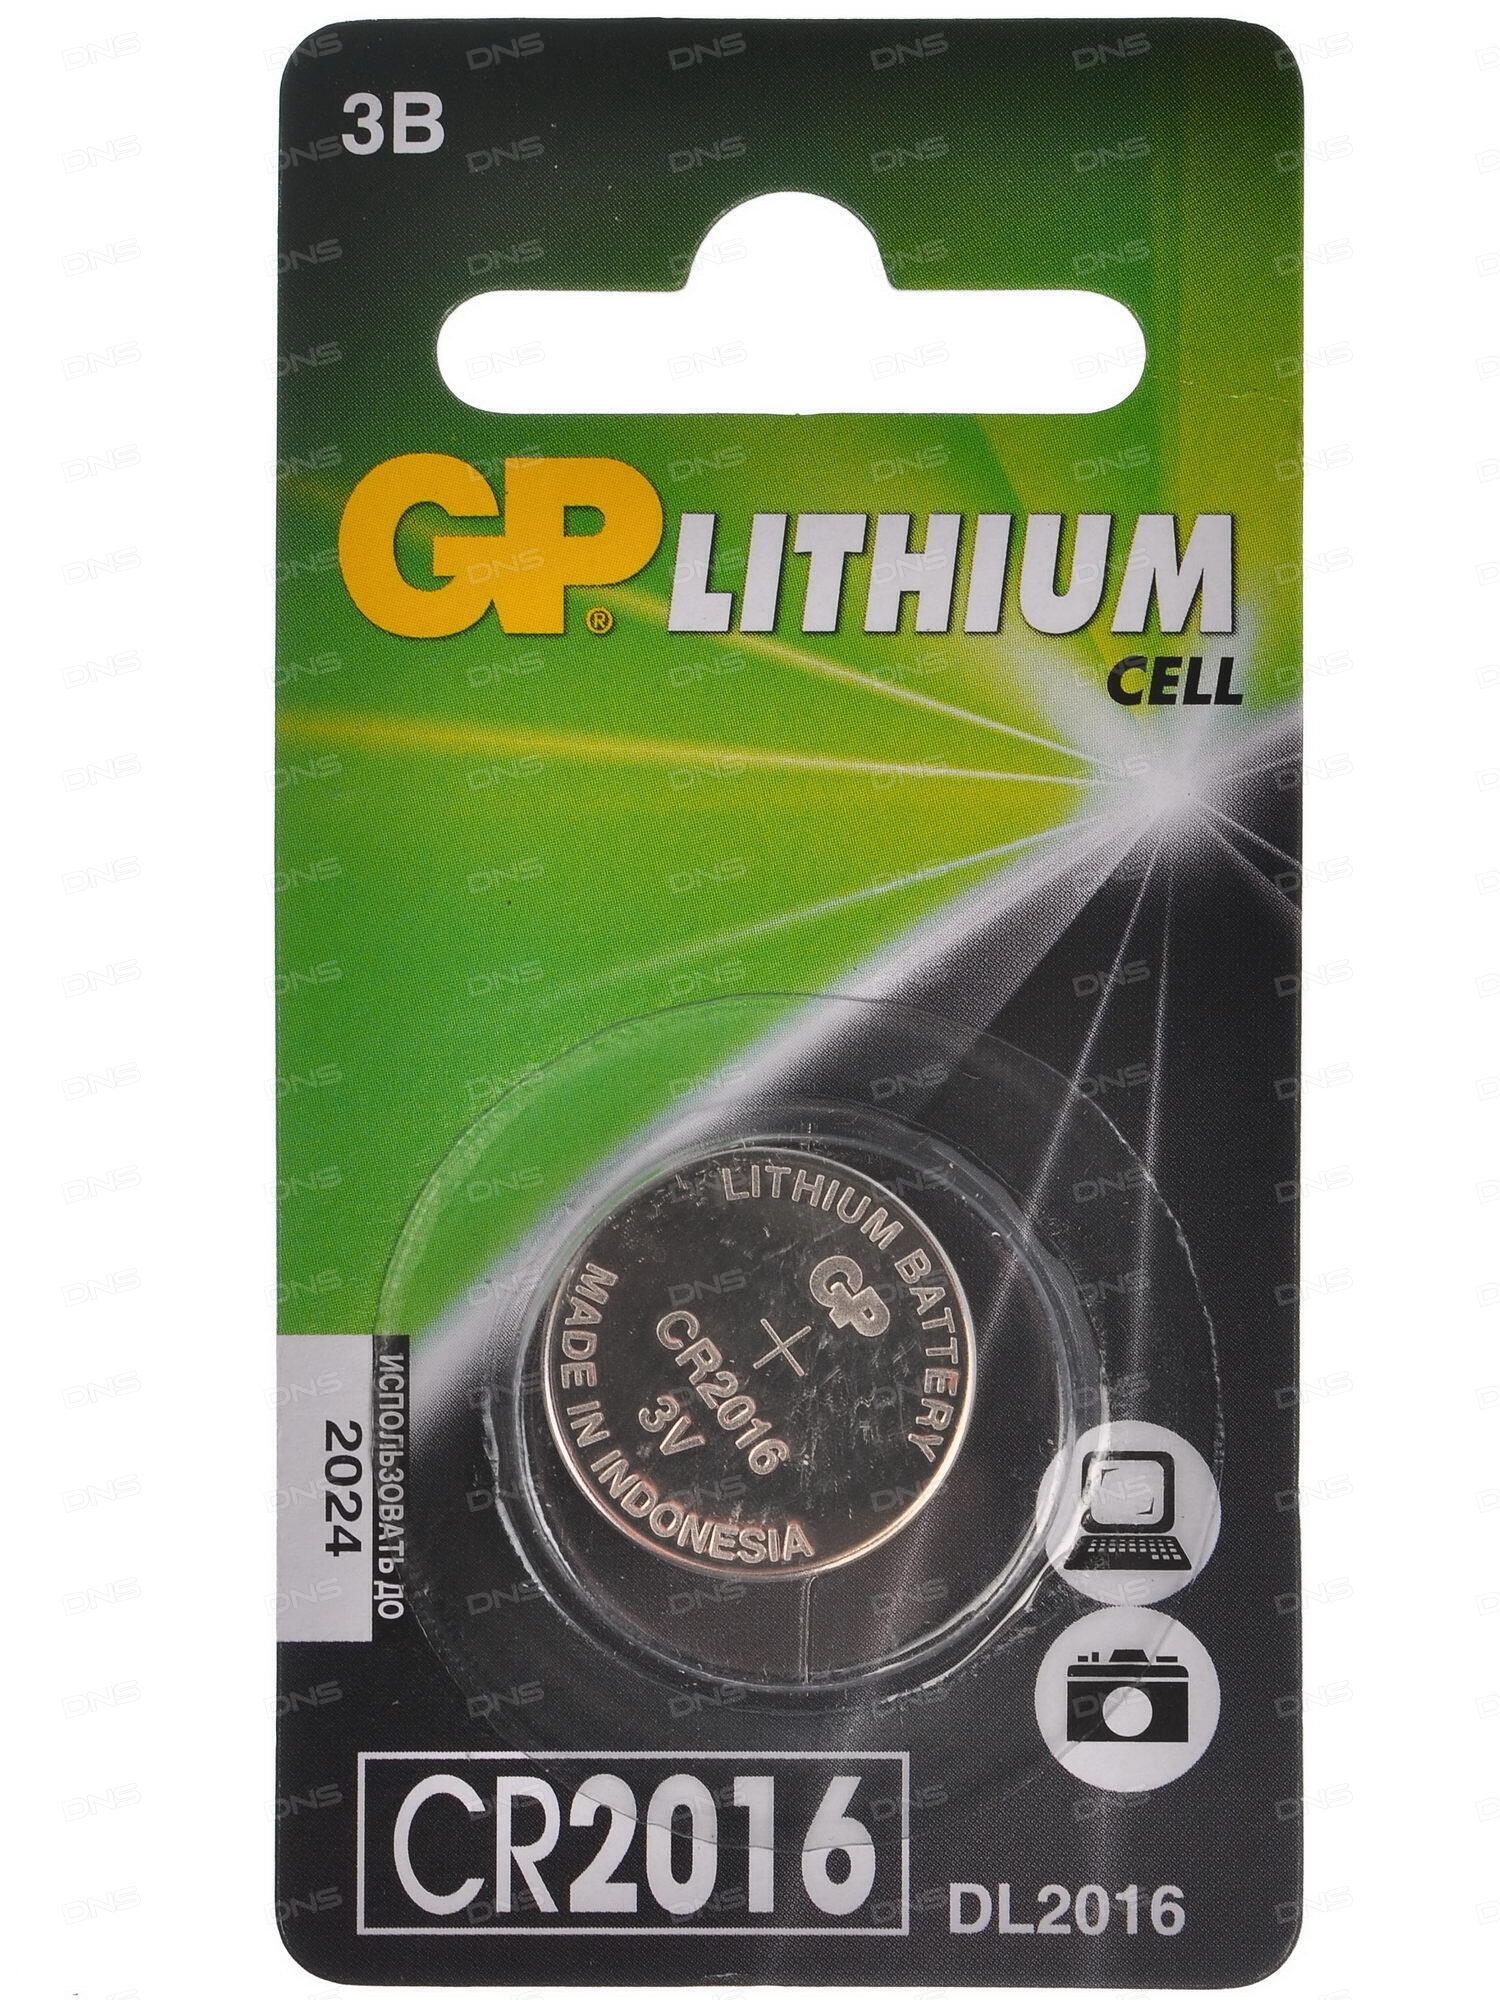 Элементы питания  E2E4 Батарея GP Lithium, CR2016, 3V, 1шт. (CR2016-7CR110/100/900)